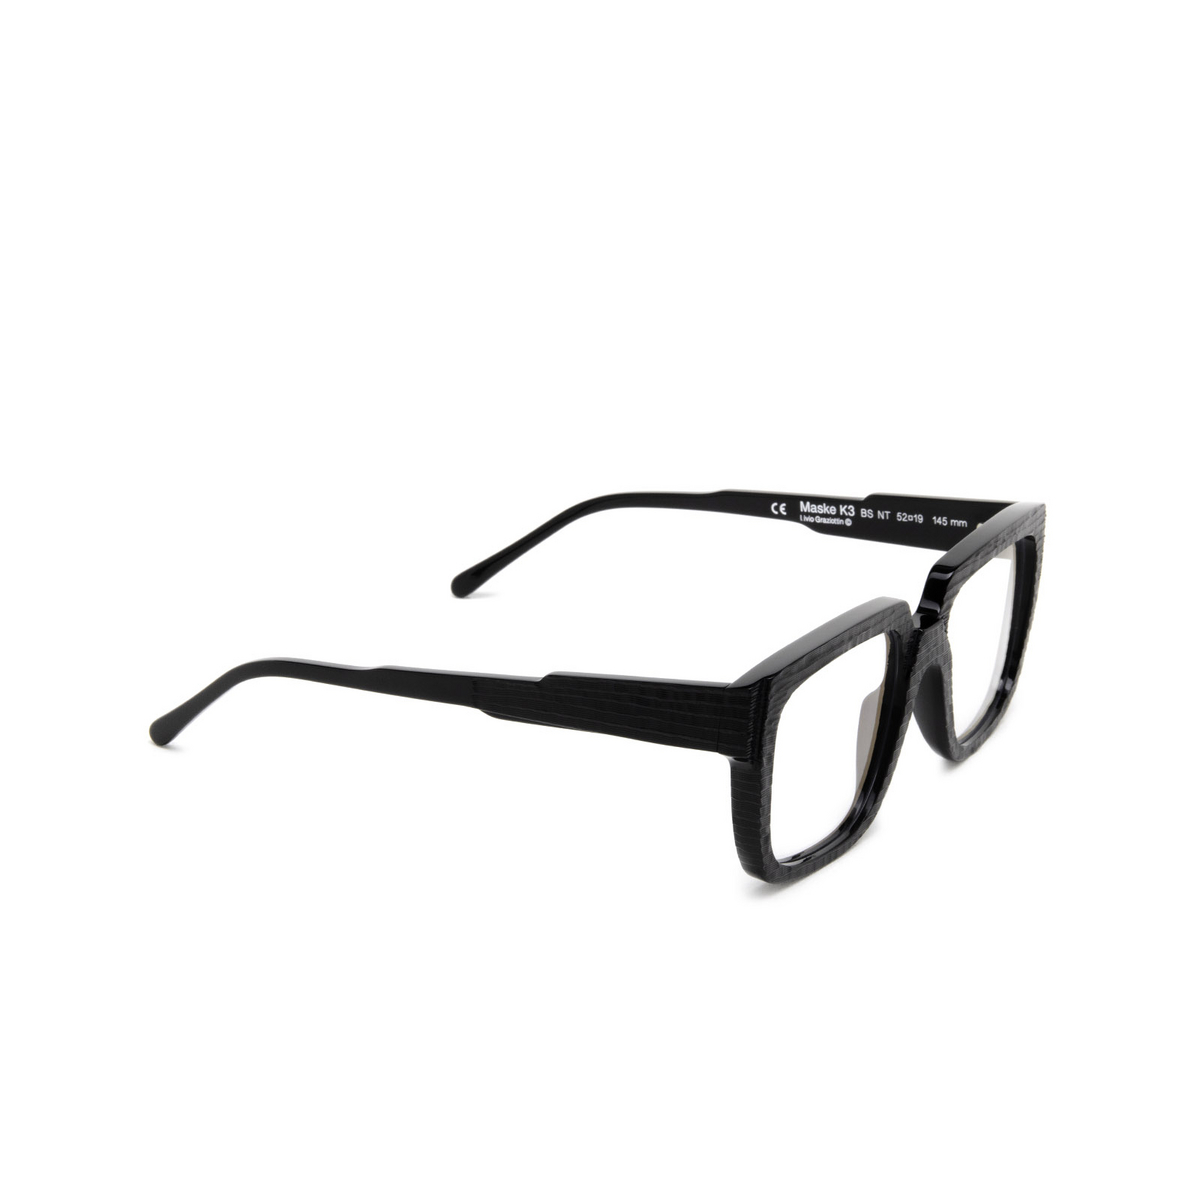 Kuboraum® Square Eyeglasses: K3 color Bs Nt Black Shine & Handcraft Finishing - three-quarters view